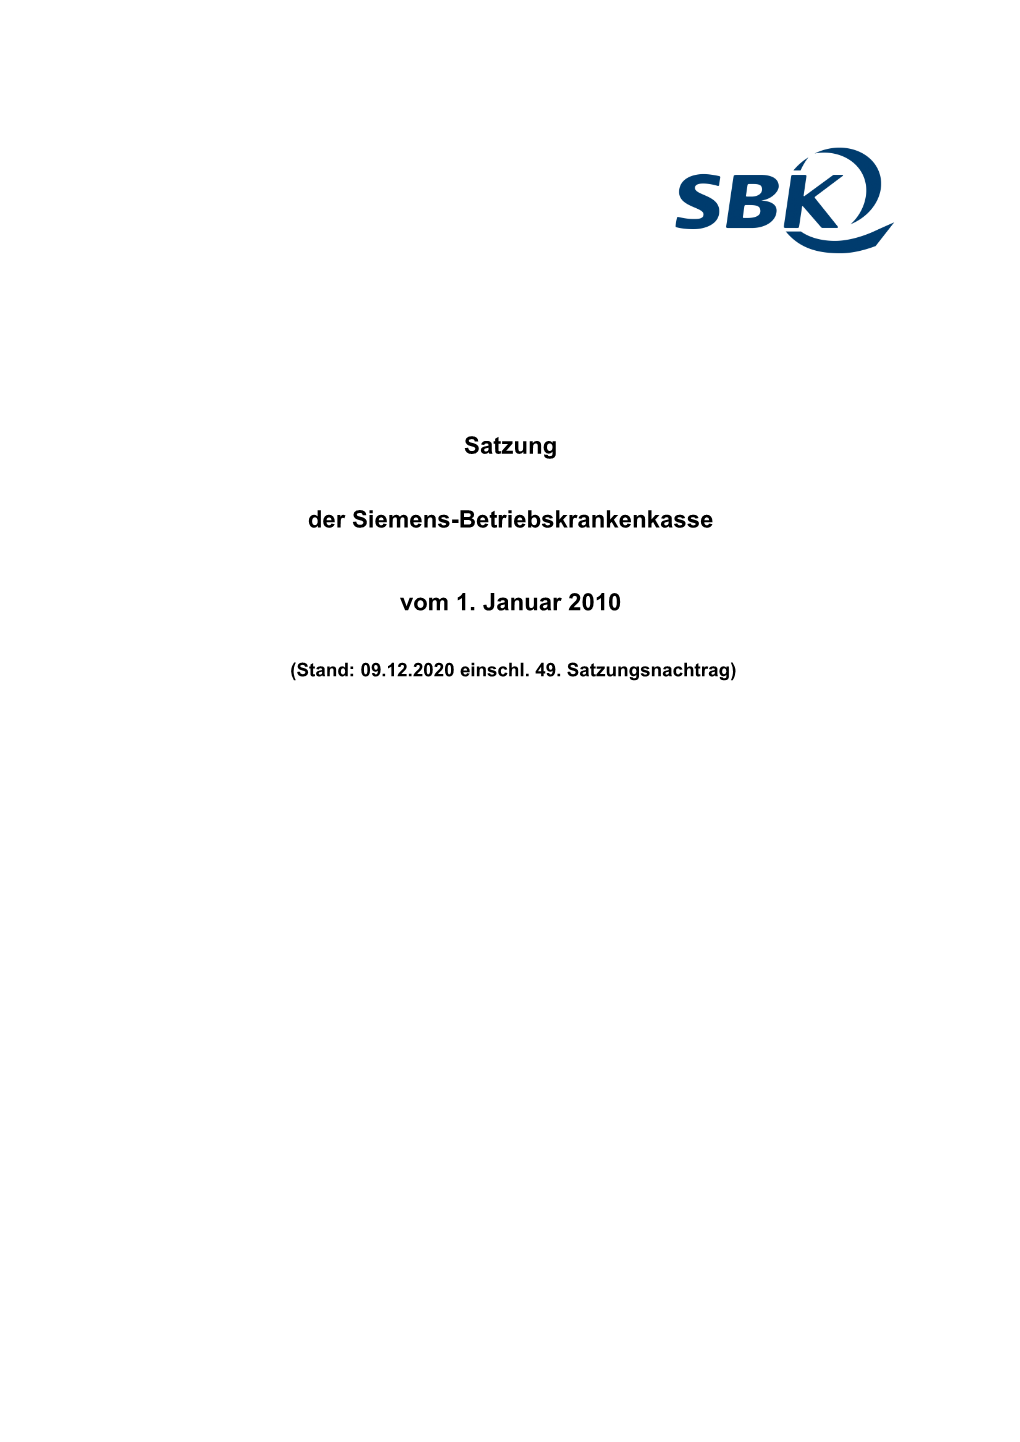 Satzung Der Siemens-Betriebskrankenkasse Vom 1.1.2010 Einschl